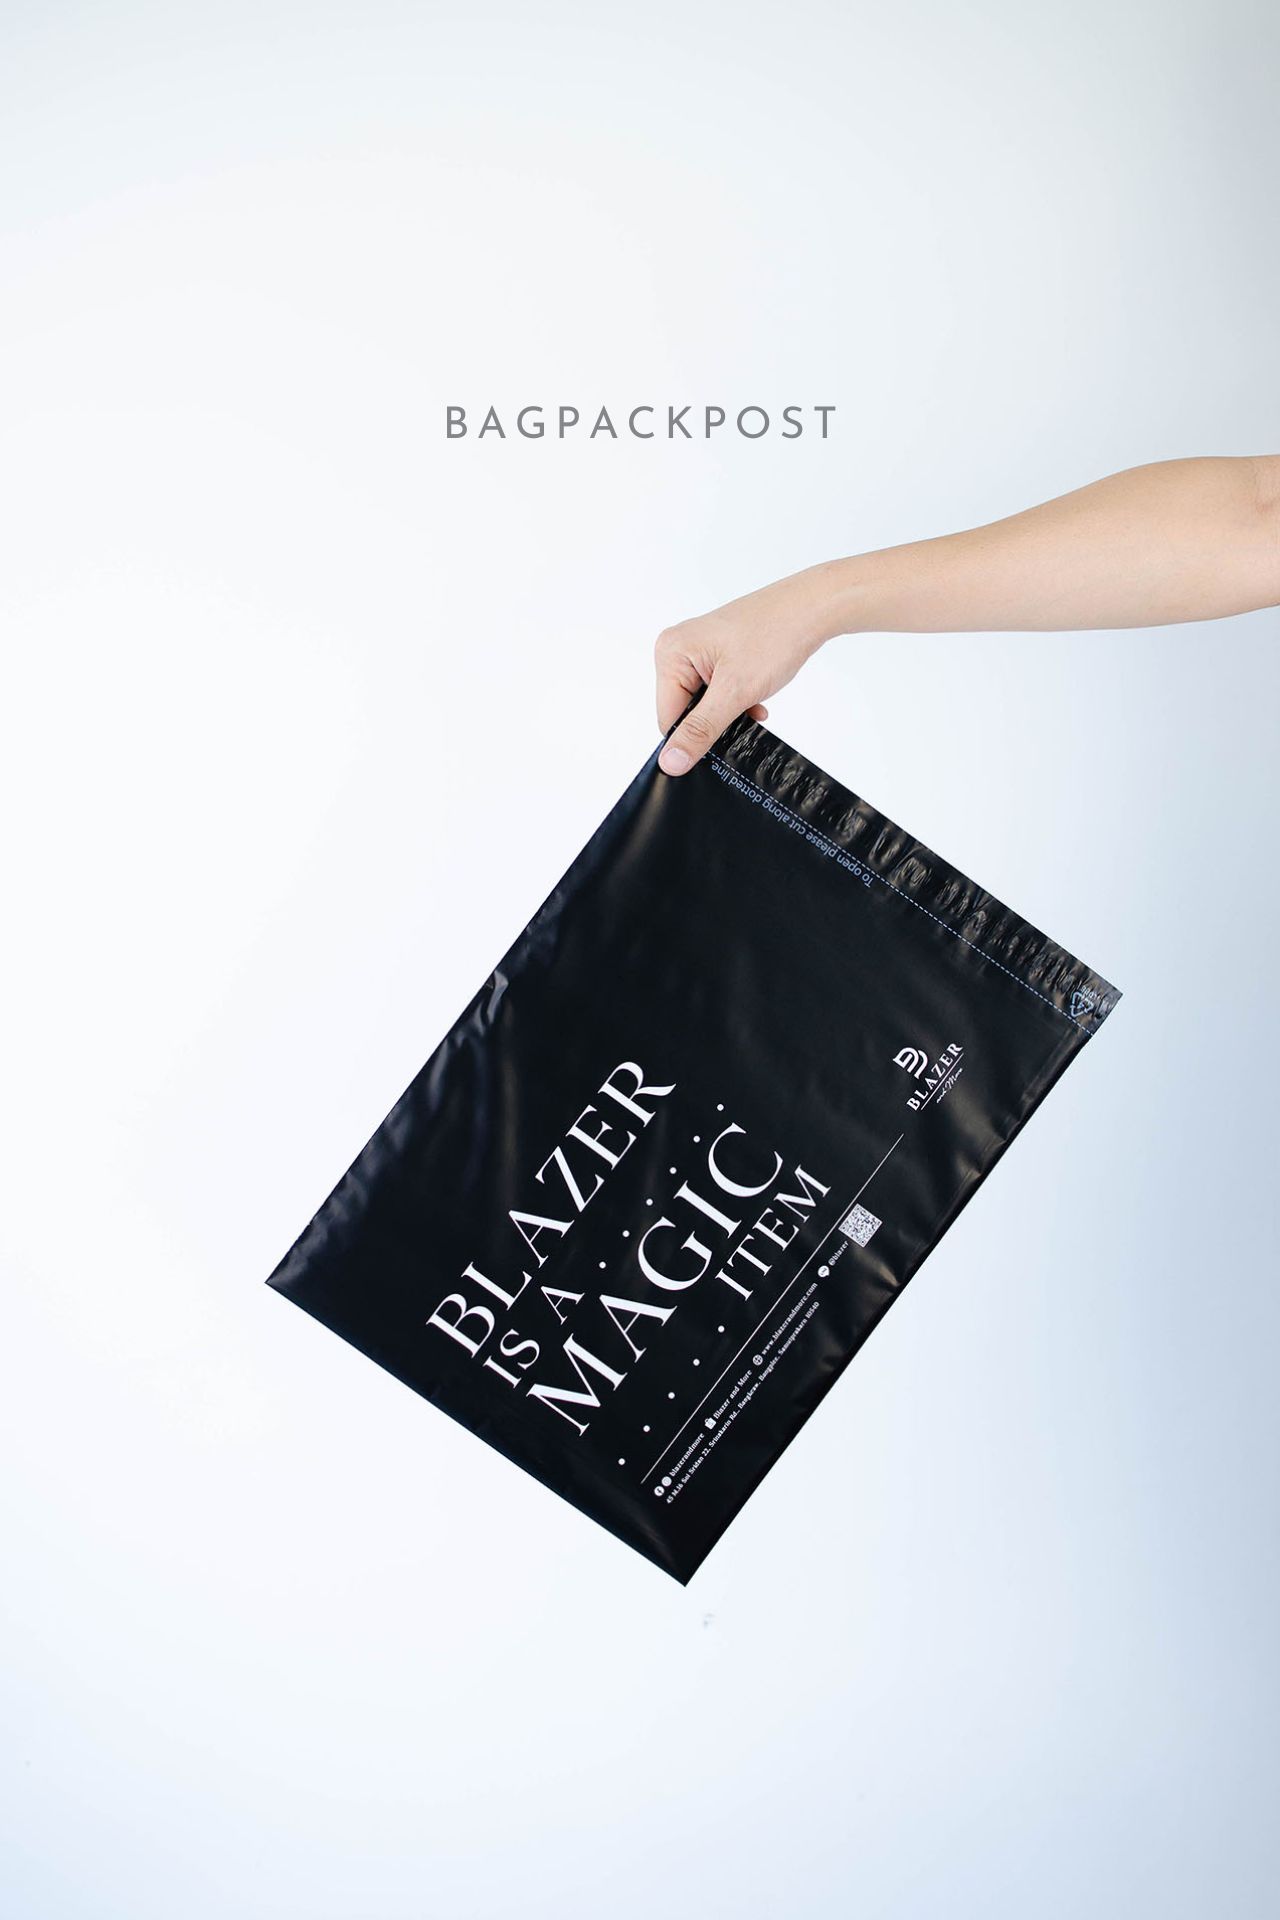 ผลิตถุงไปรษณีย์ ซองไปรษณีย์พิมพ์ลาย Blazer and More ซองไปรษณีย์สีดำ ถุงไปรษณีย์พิมพ์ลาย 3 BagPackPost